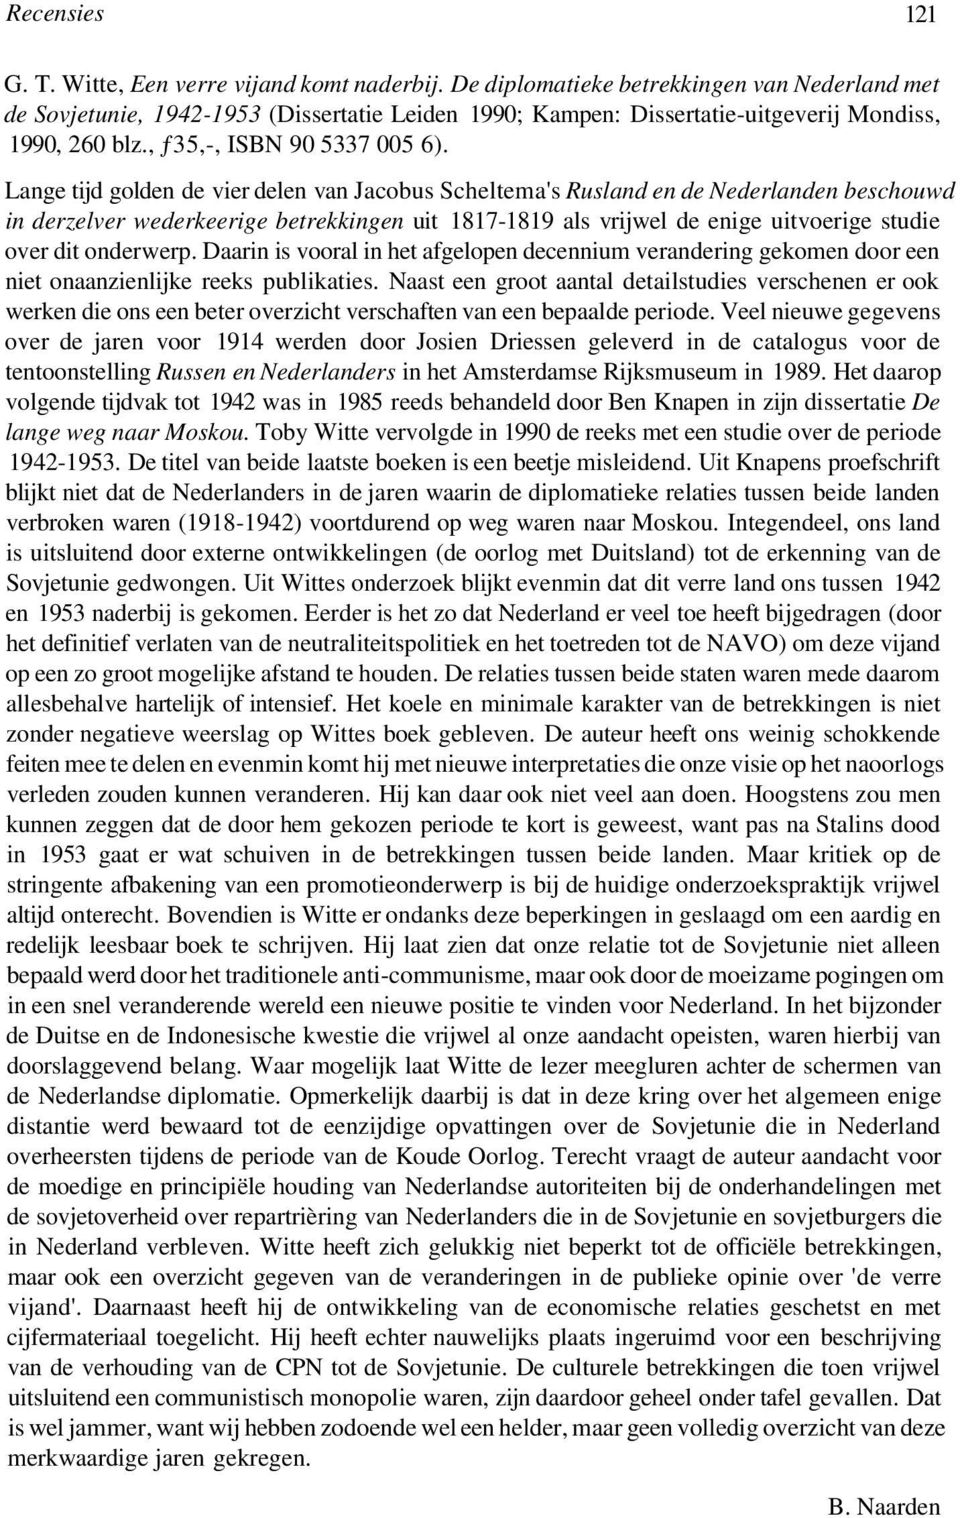 Lange tijd golden de vier delen van Jacobus Scheltema's Rusland en de Nederlanden beschouwd in derzelver wederkeerige betrekkingen uit 1817-1819 als vrijwel de enige uitvoerige studie over dit